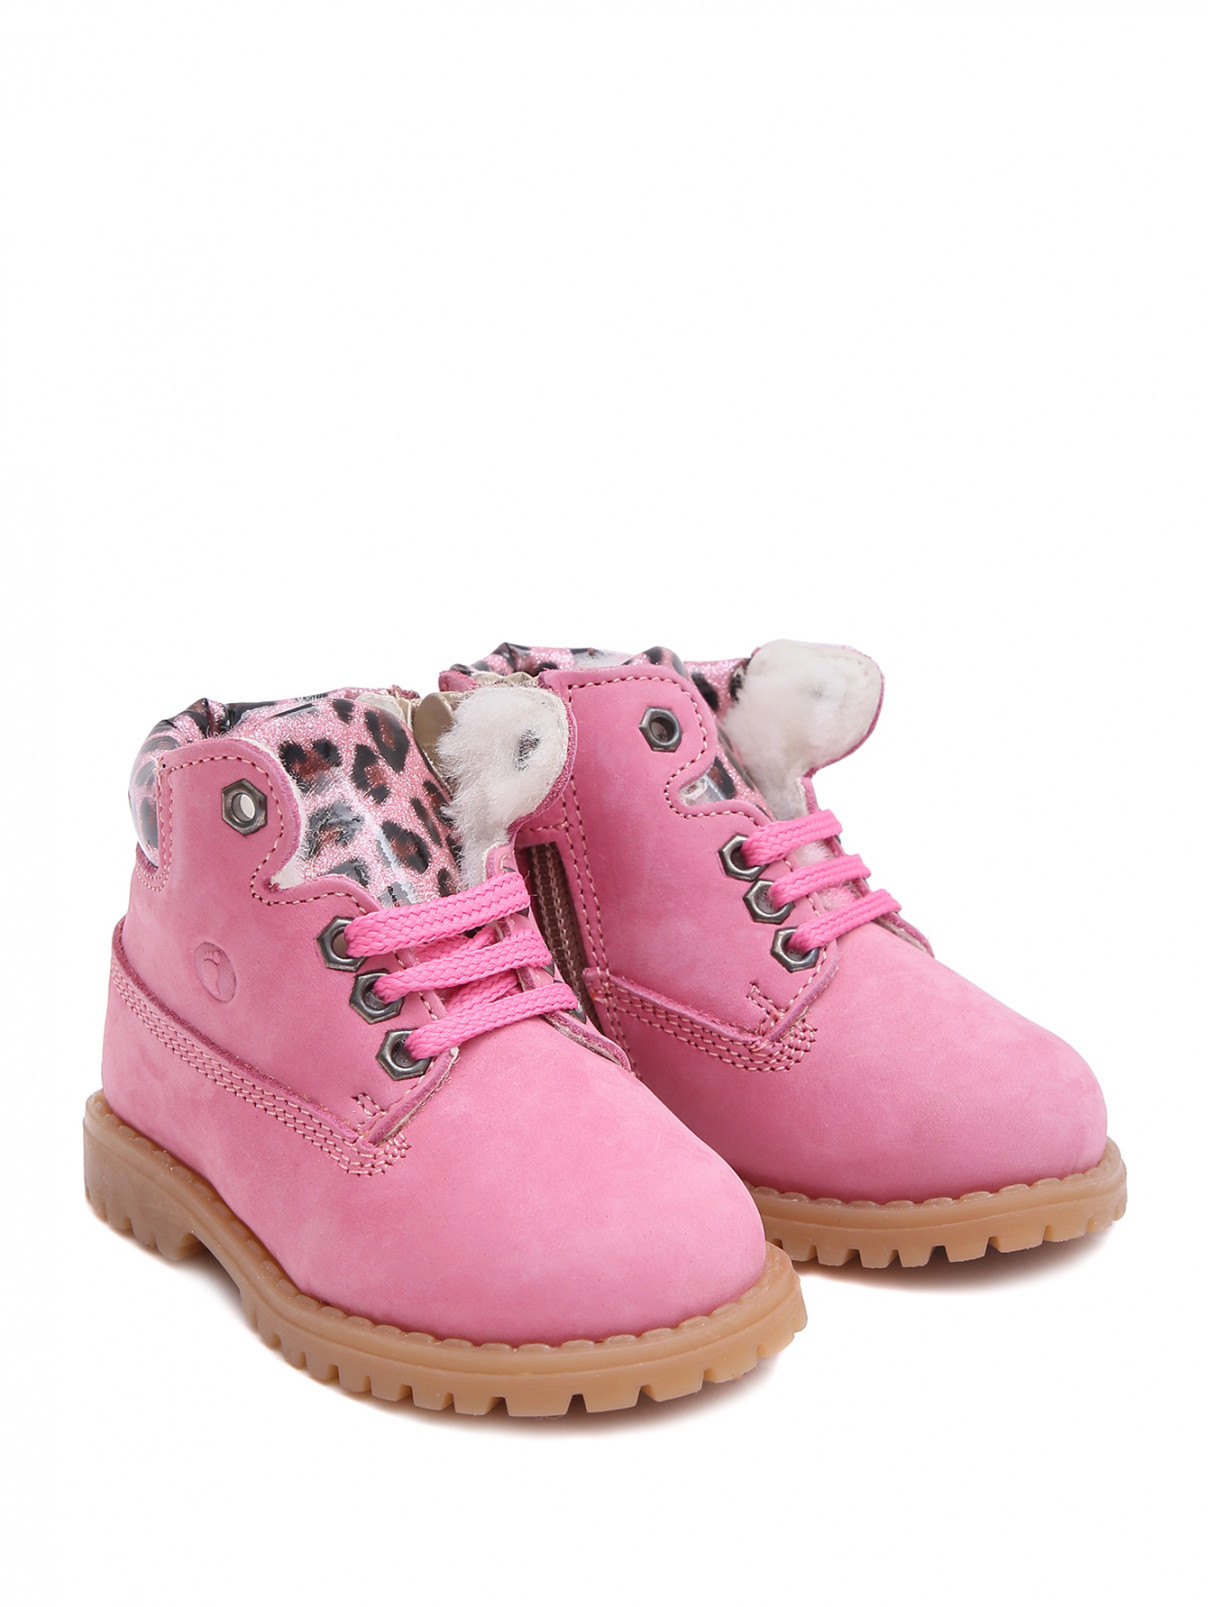 Замшевые утепленные ботинки Walkey  –  Общий вид  – Цвет:  Розовый